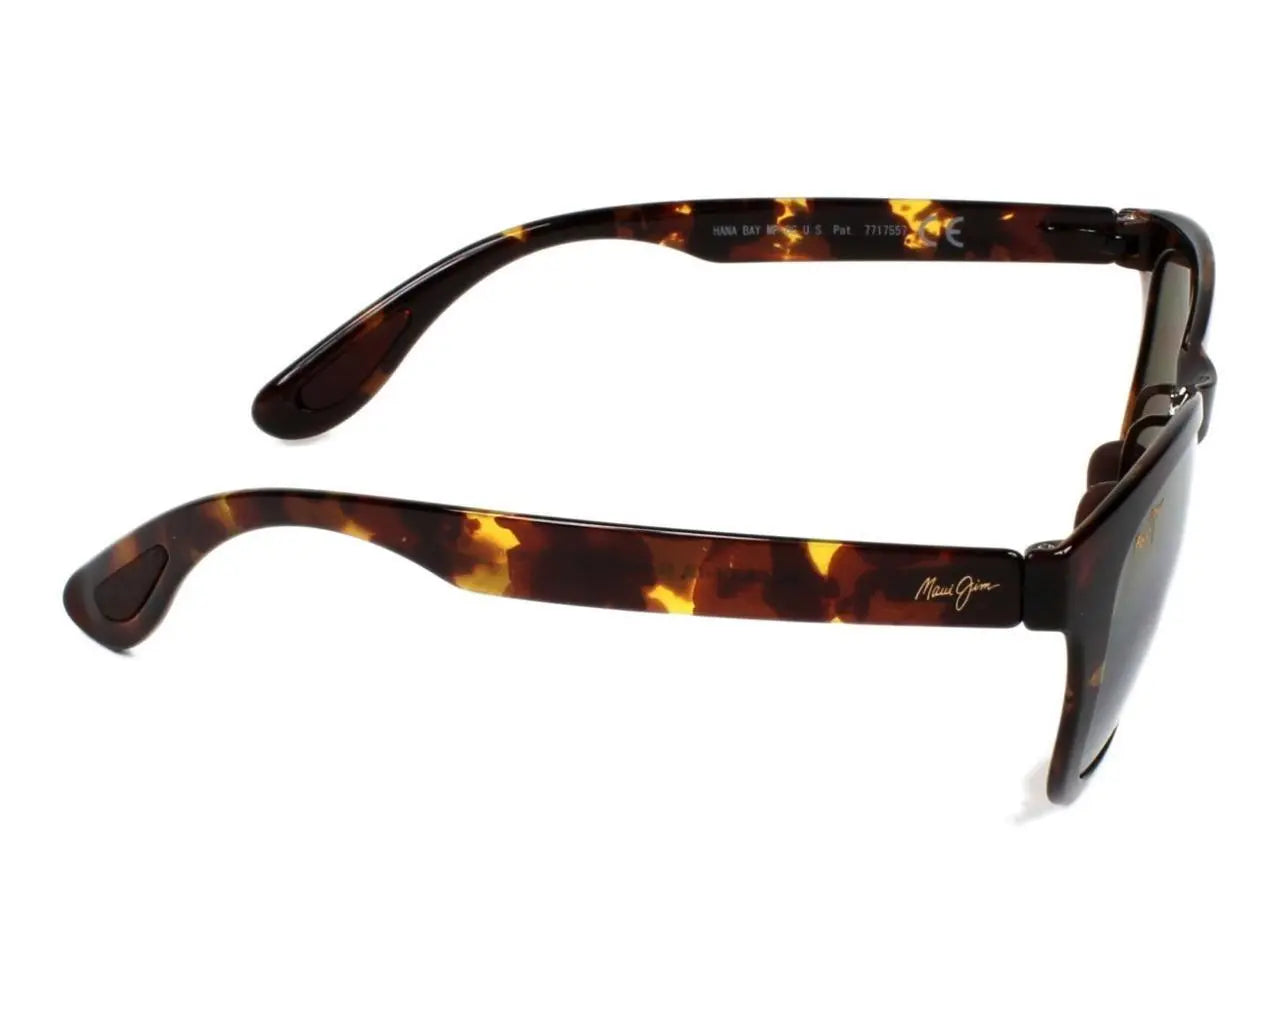 Maui Jim 434-10HL 51mm New Sunglasses